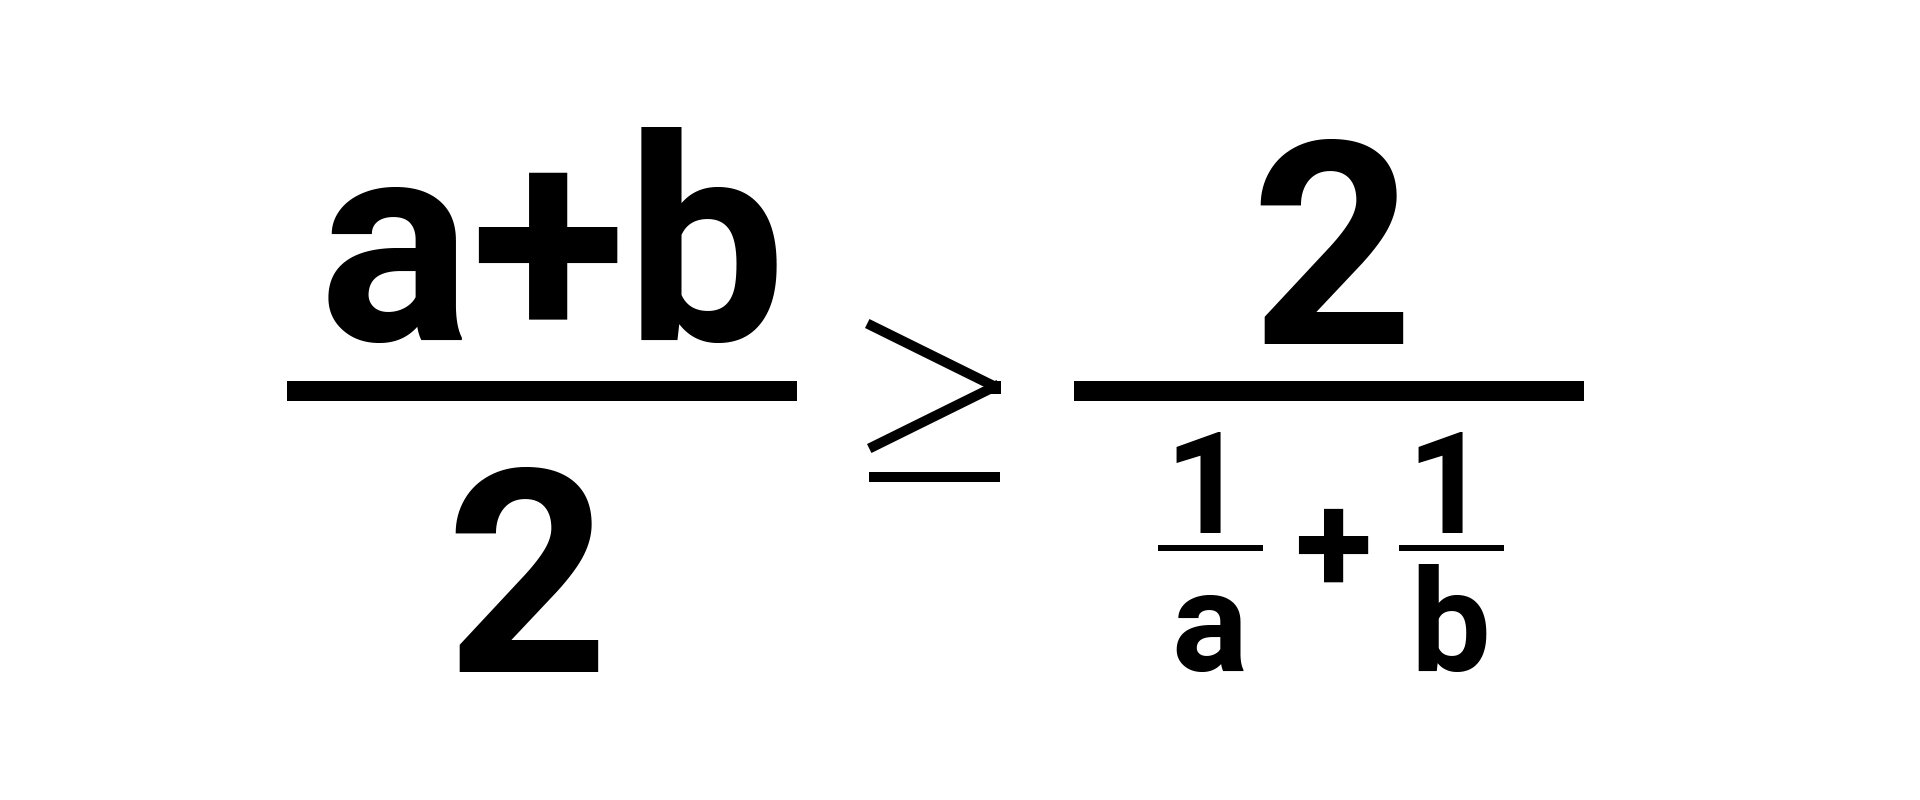 Iloraz sumy a i b oraz 2 (średnia arytmetyczna) jest większy równy ilorazowi liczby 2 oraz sumy odwrotności a i odwrotności b (średnia harmoniczna).